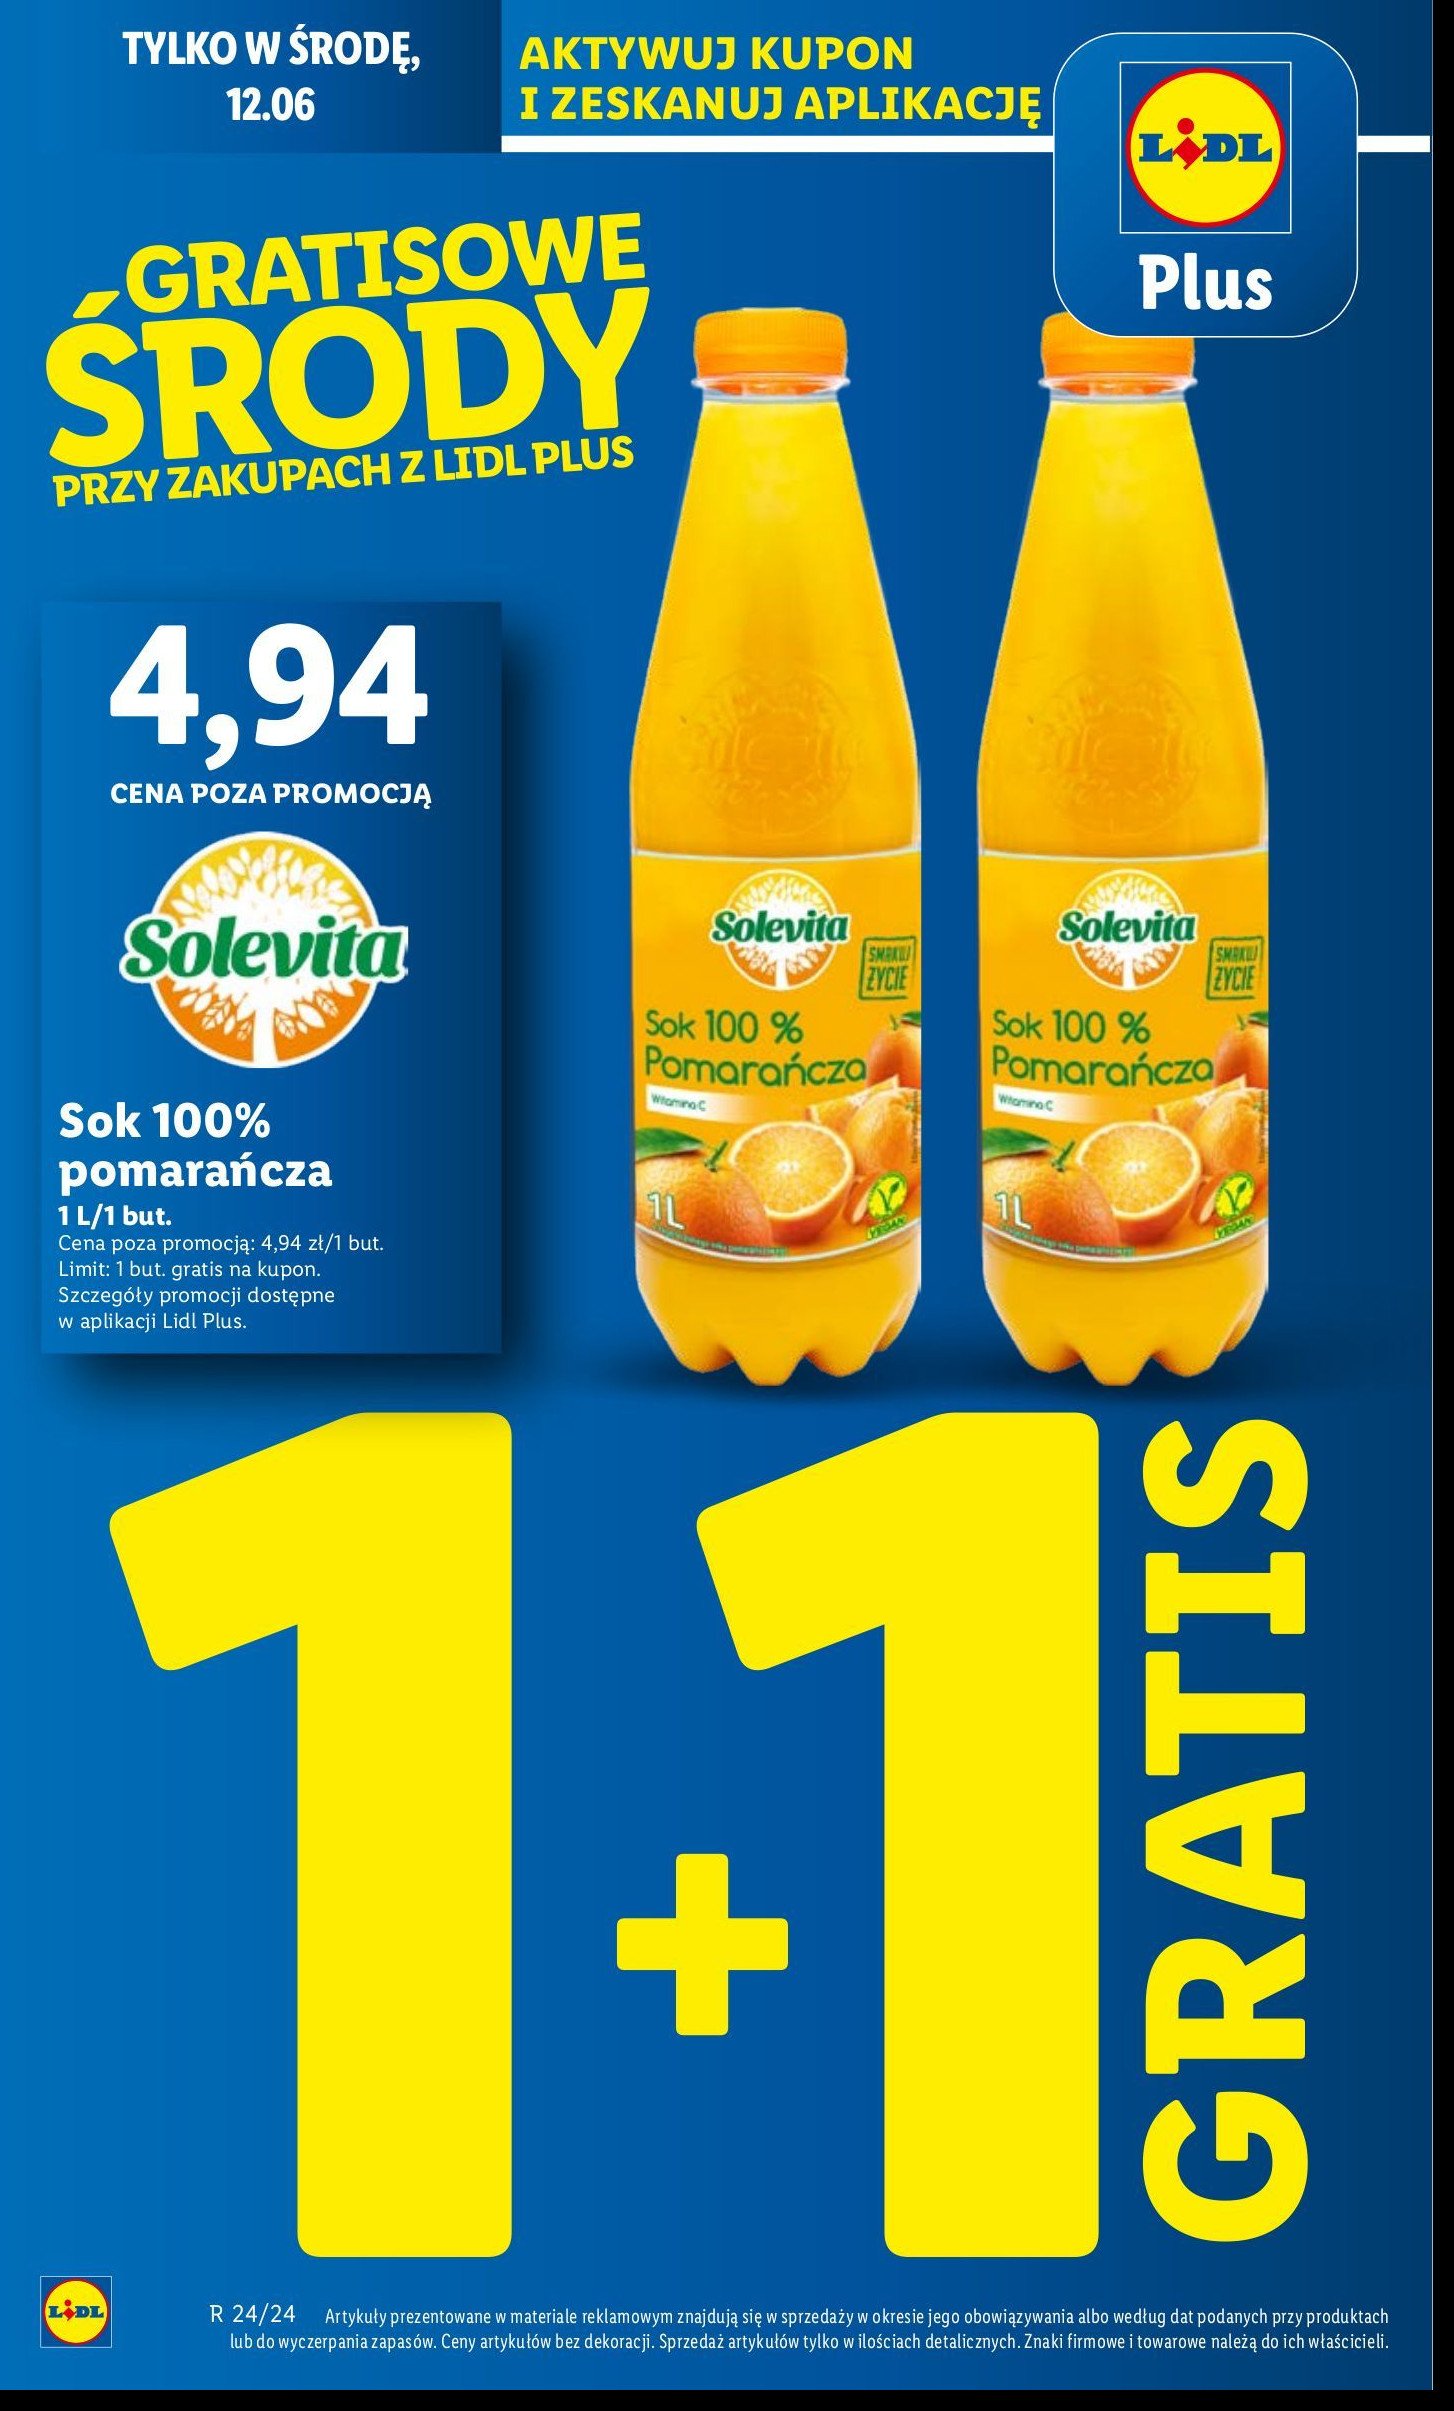 Sok pomarańczowy 100% Solevita promocja